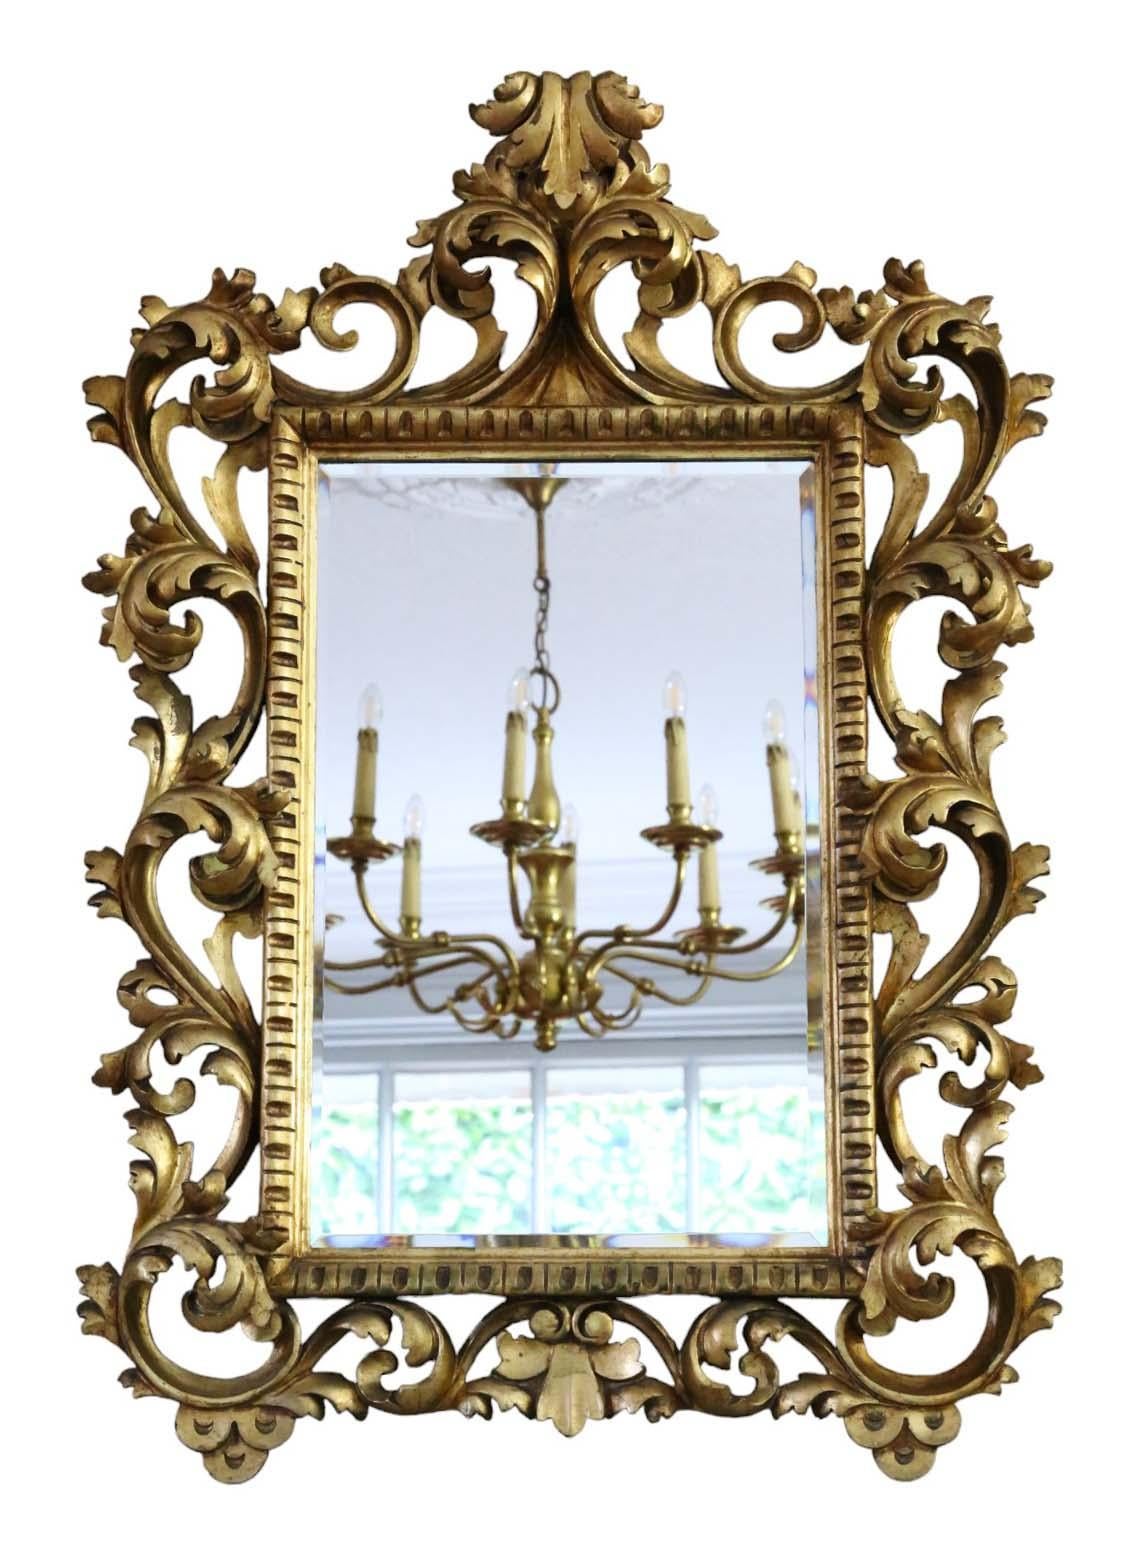 Miroir mural ancien en bois doré du XIXe siècle, d'une grande qualité d'exécution.

Ce miroir enchante par son design Florentine saisissant, ajoutant du caractère à tout espace approprié. Le cadre est robuste, sans joints lâches ni vers de bois.

Le